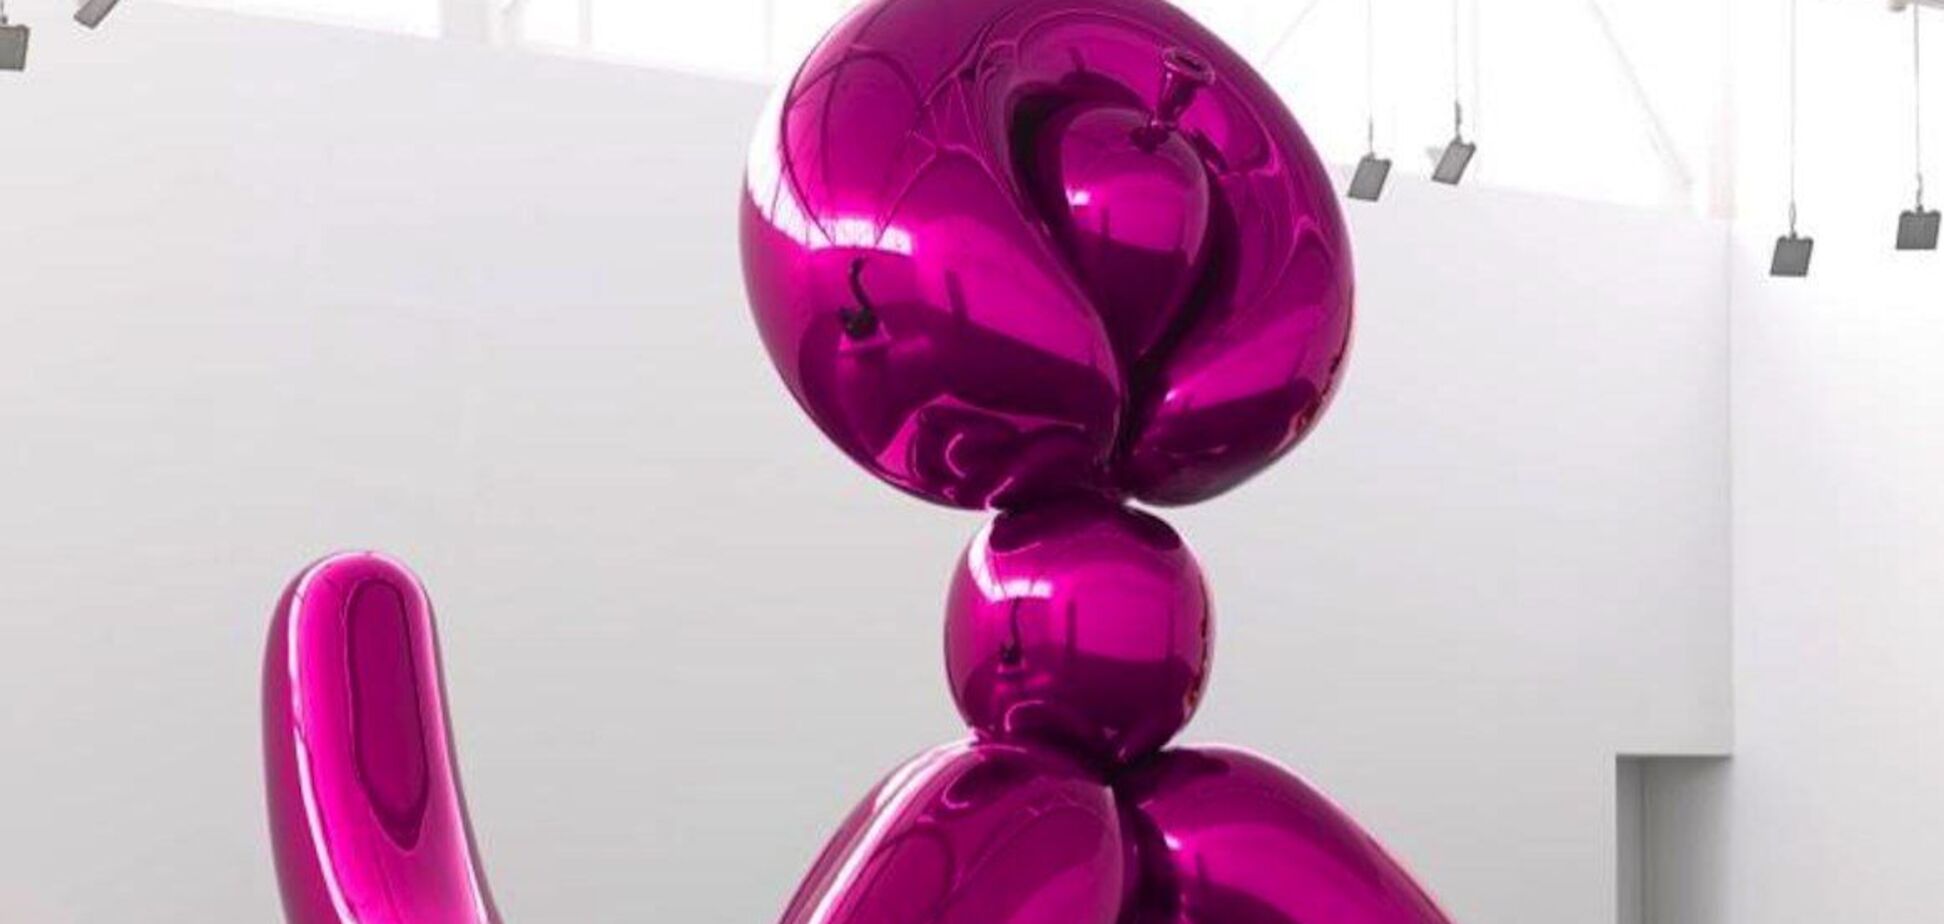 Для збору коштів на допомогу Україні. Віктор та Олена Пінчук продадуть на аукціоні скульптуру Джеффа Кунса Balloon Monkey